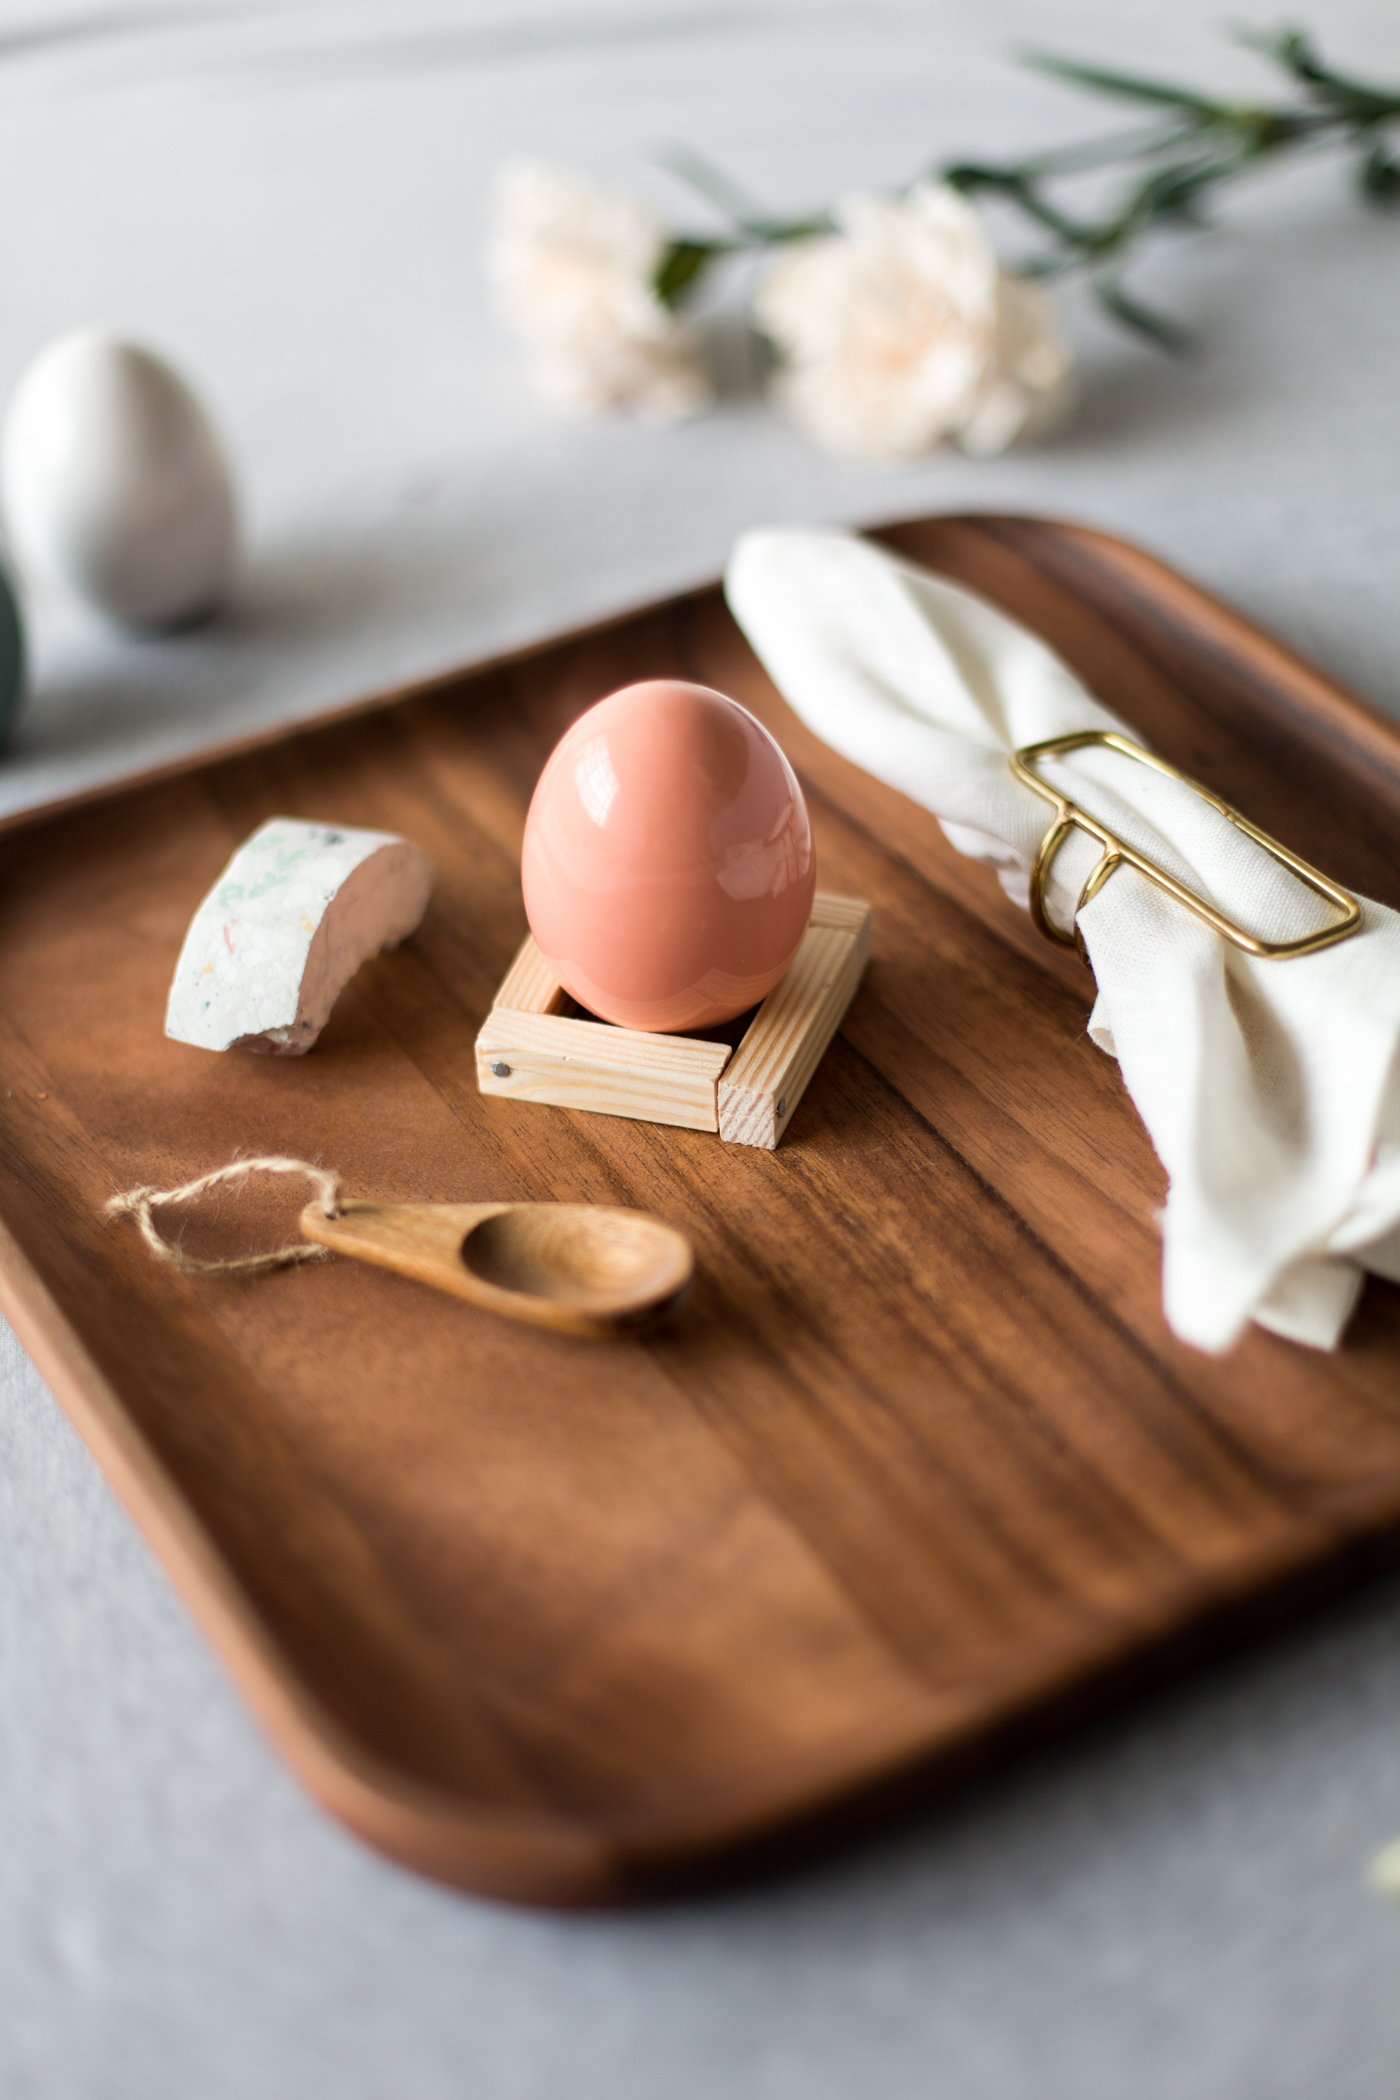 DIY Wooden Easter Egg Cup